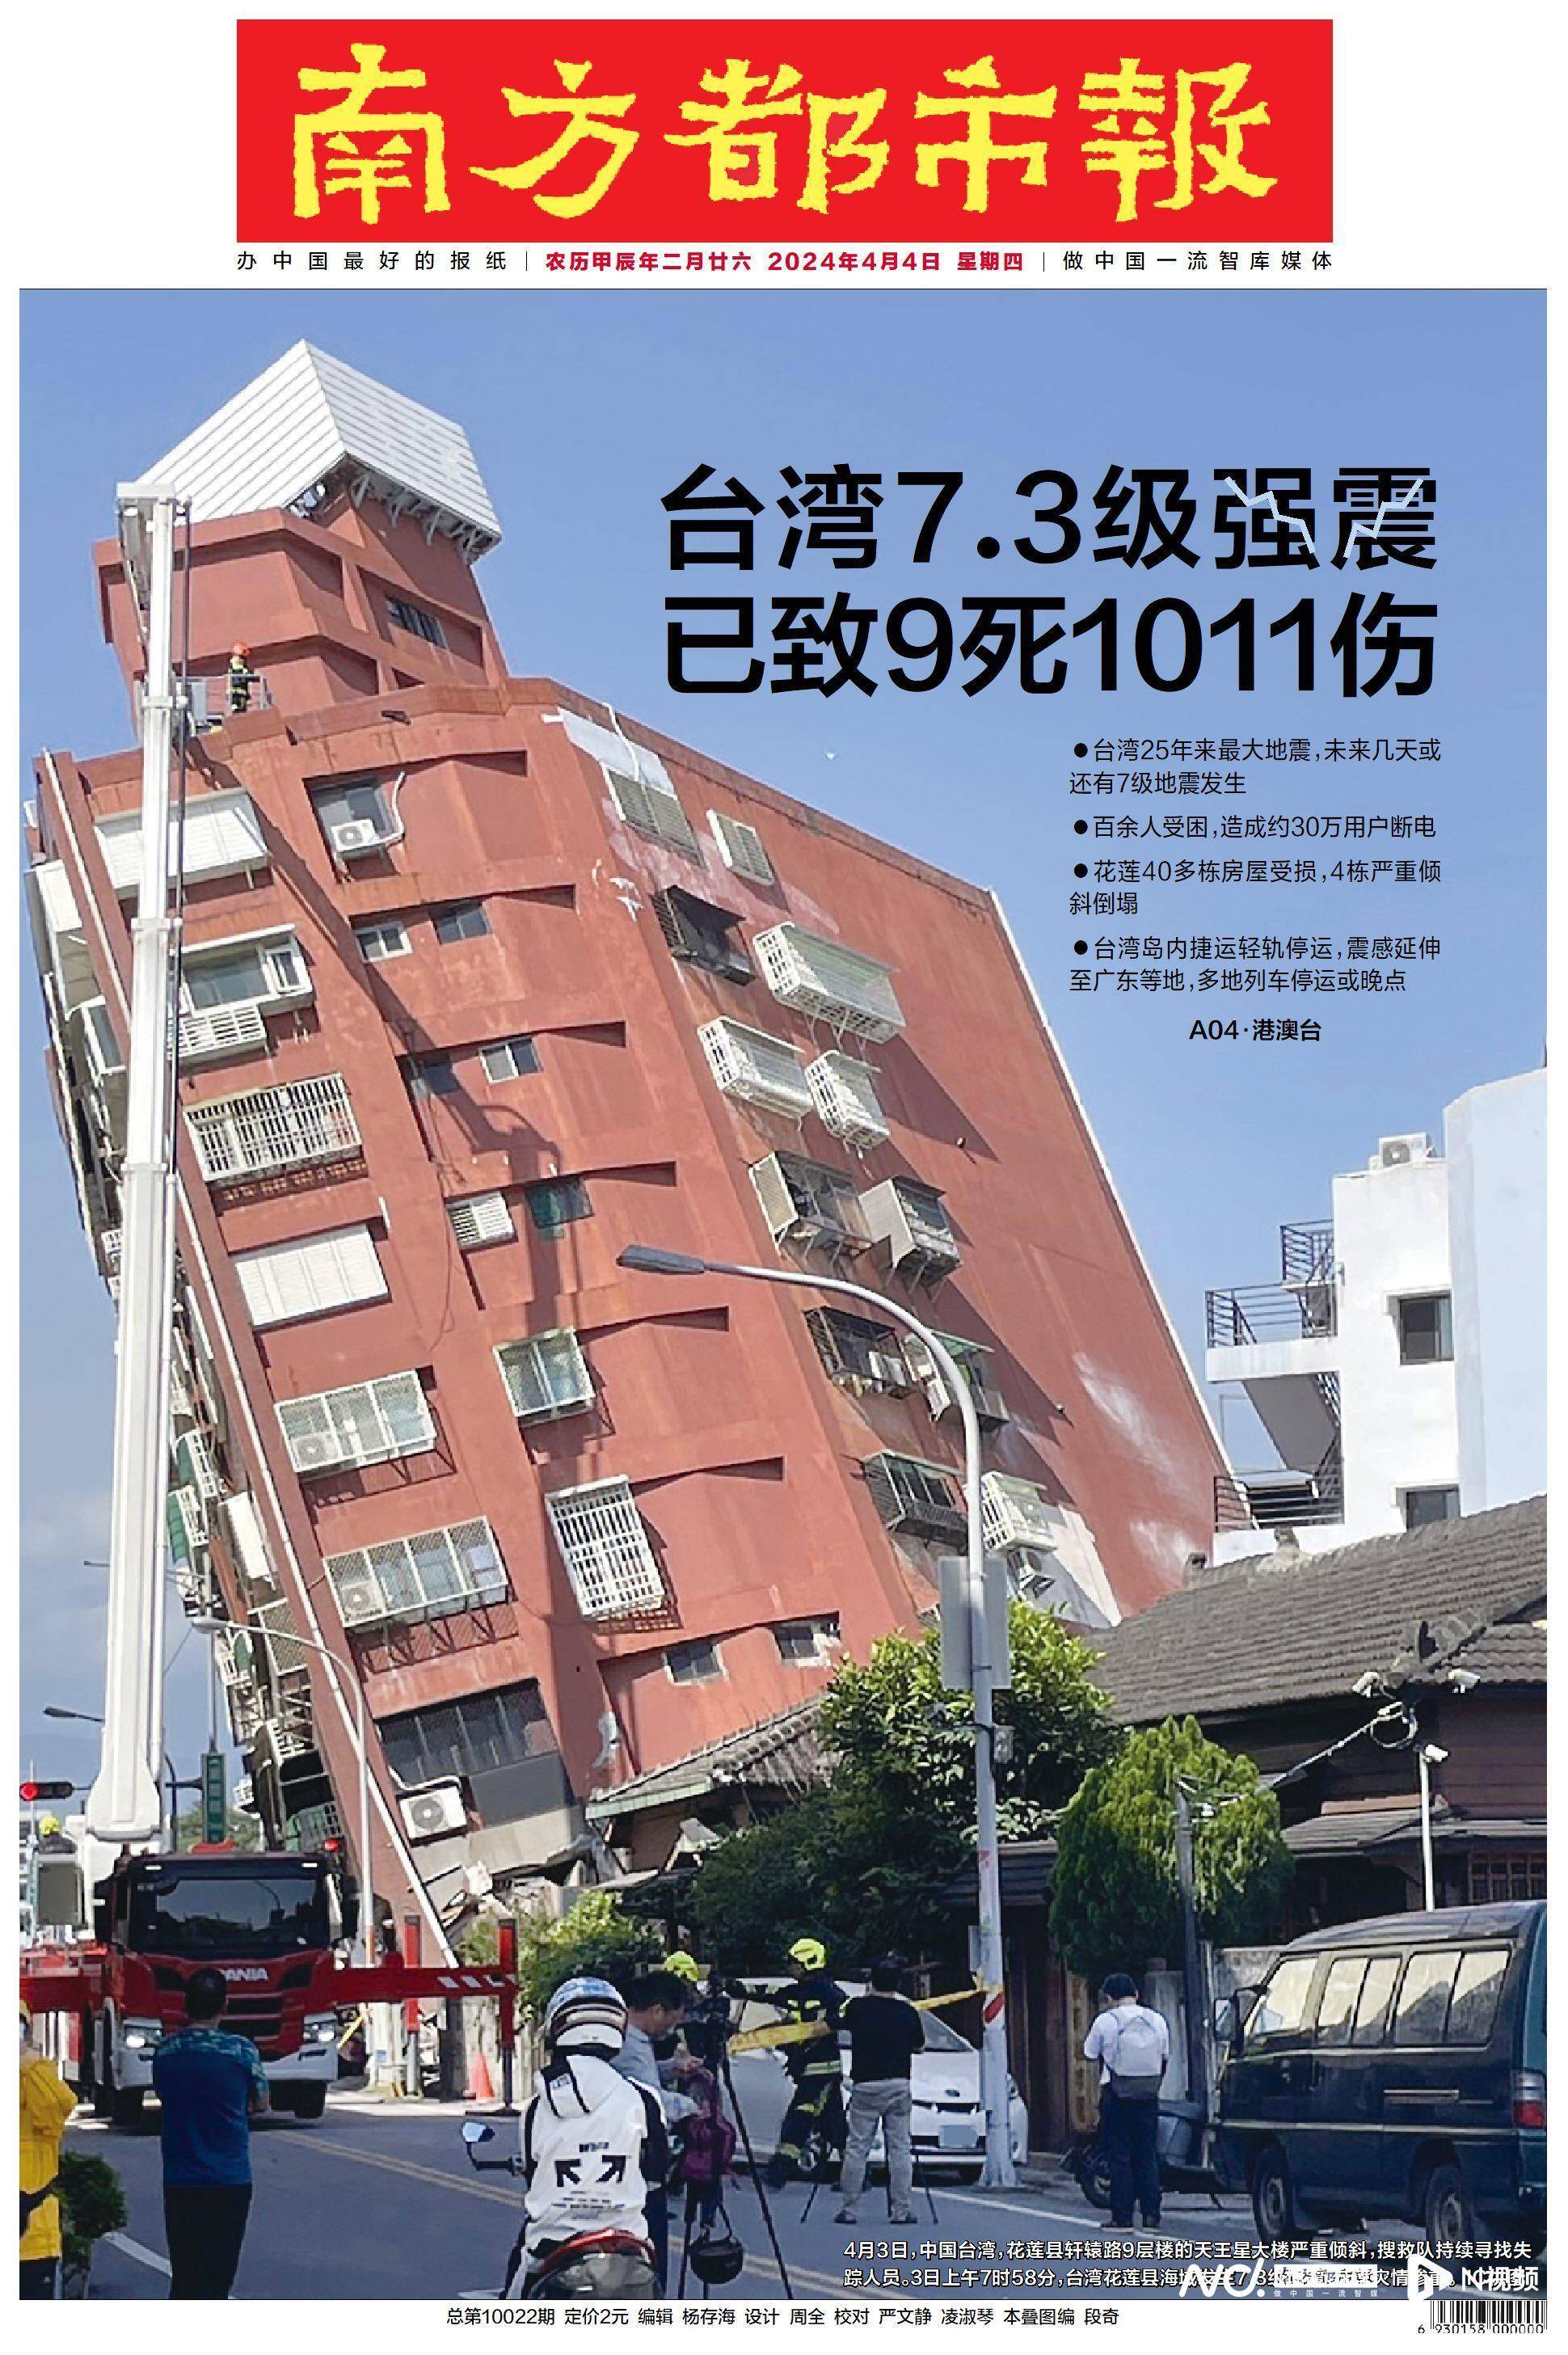 头版头条:台湾25年来最大强震致9死1011伤百余人受困